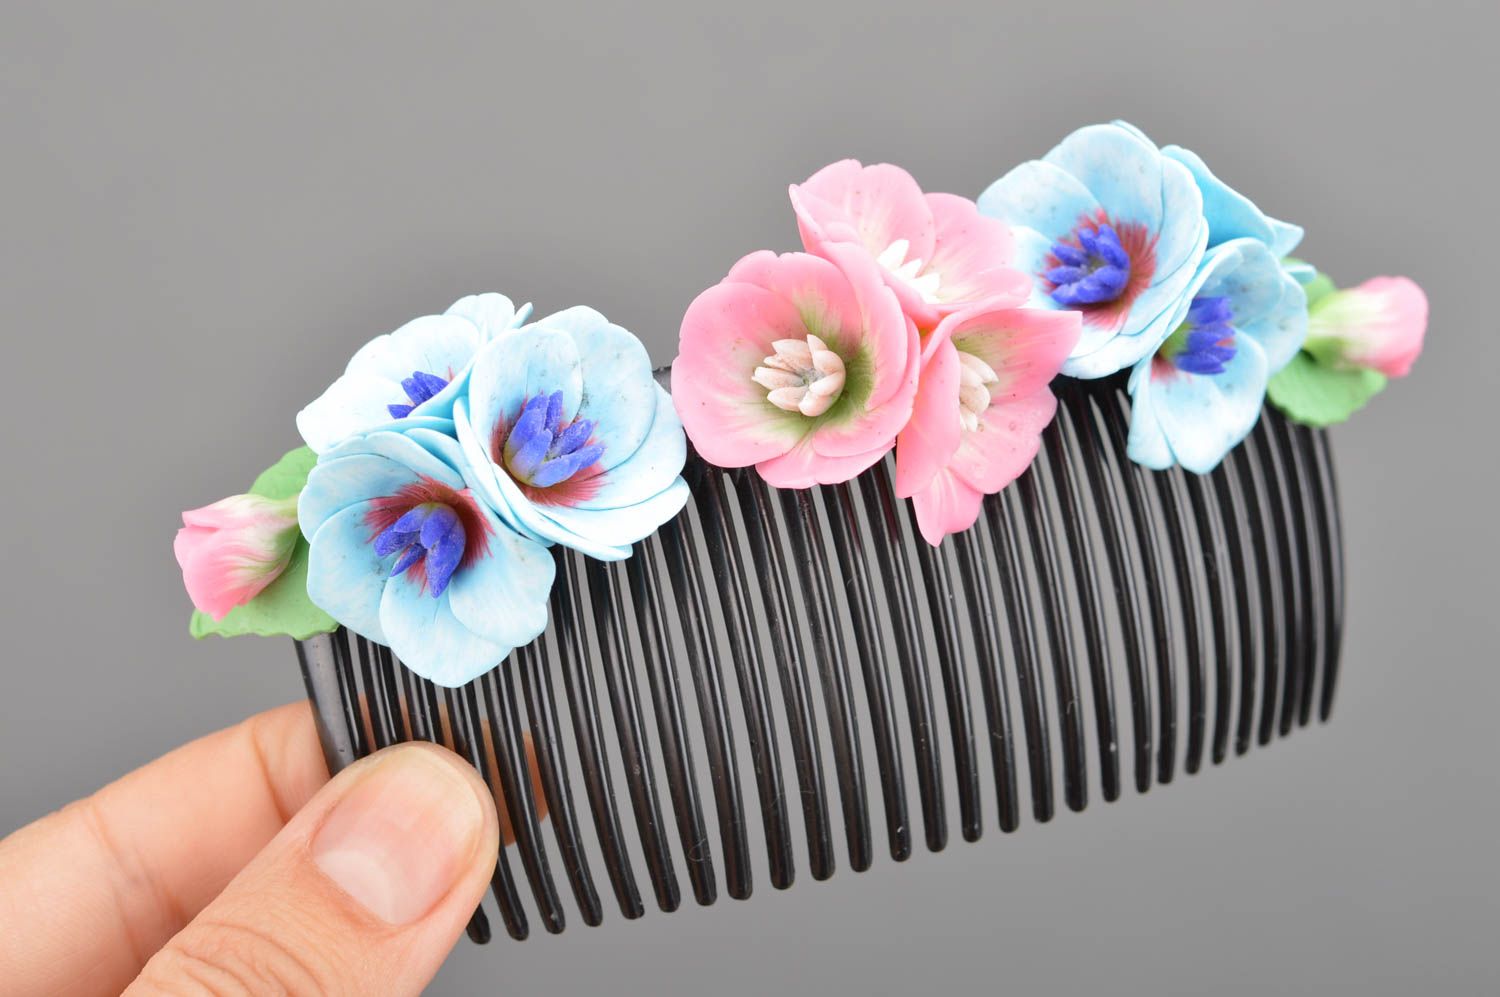 Peineta para el pelo con flores de arcilla polimérica artesanal delicada  foto 2